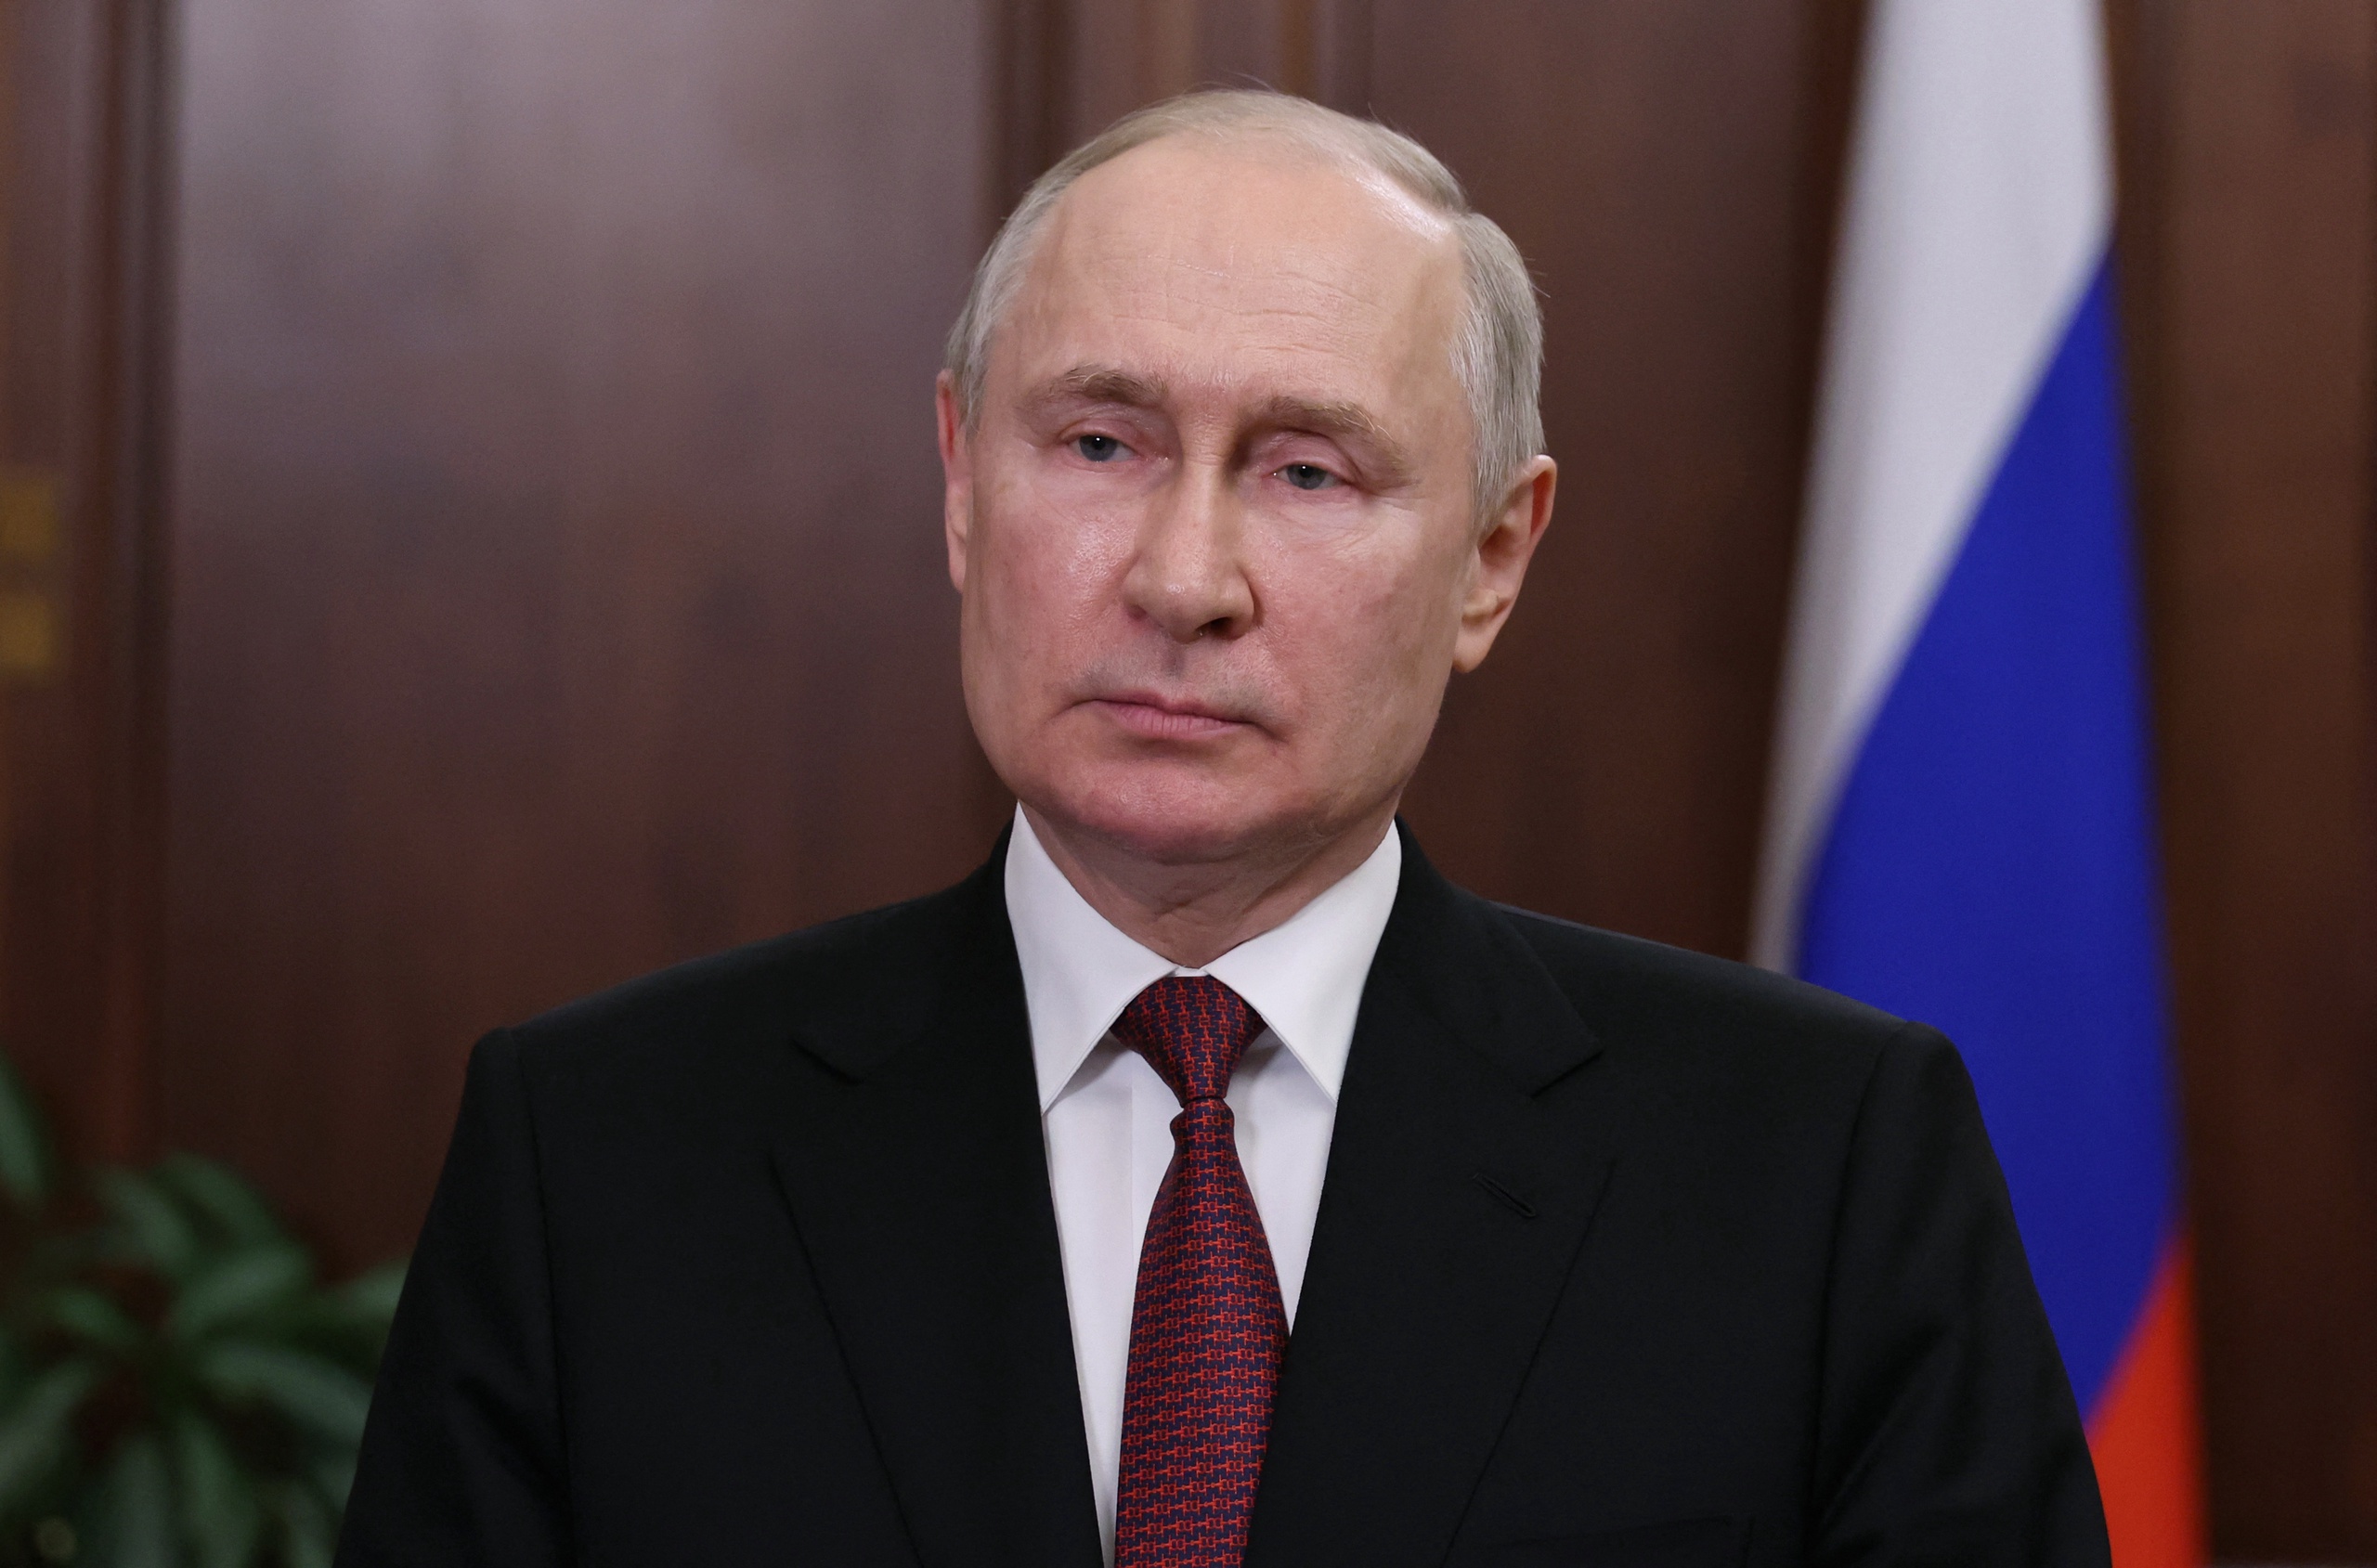 De Russische president Vladimir Poetin heeft vandaag aangekondigd strengere grenscontroles in te zullen stellen, om zo militaire en civiele bewegingen aan de grenzen met bezette Oekraïense gebieden te versnellen. Dat meldt Reuters.